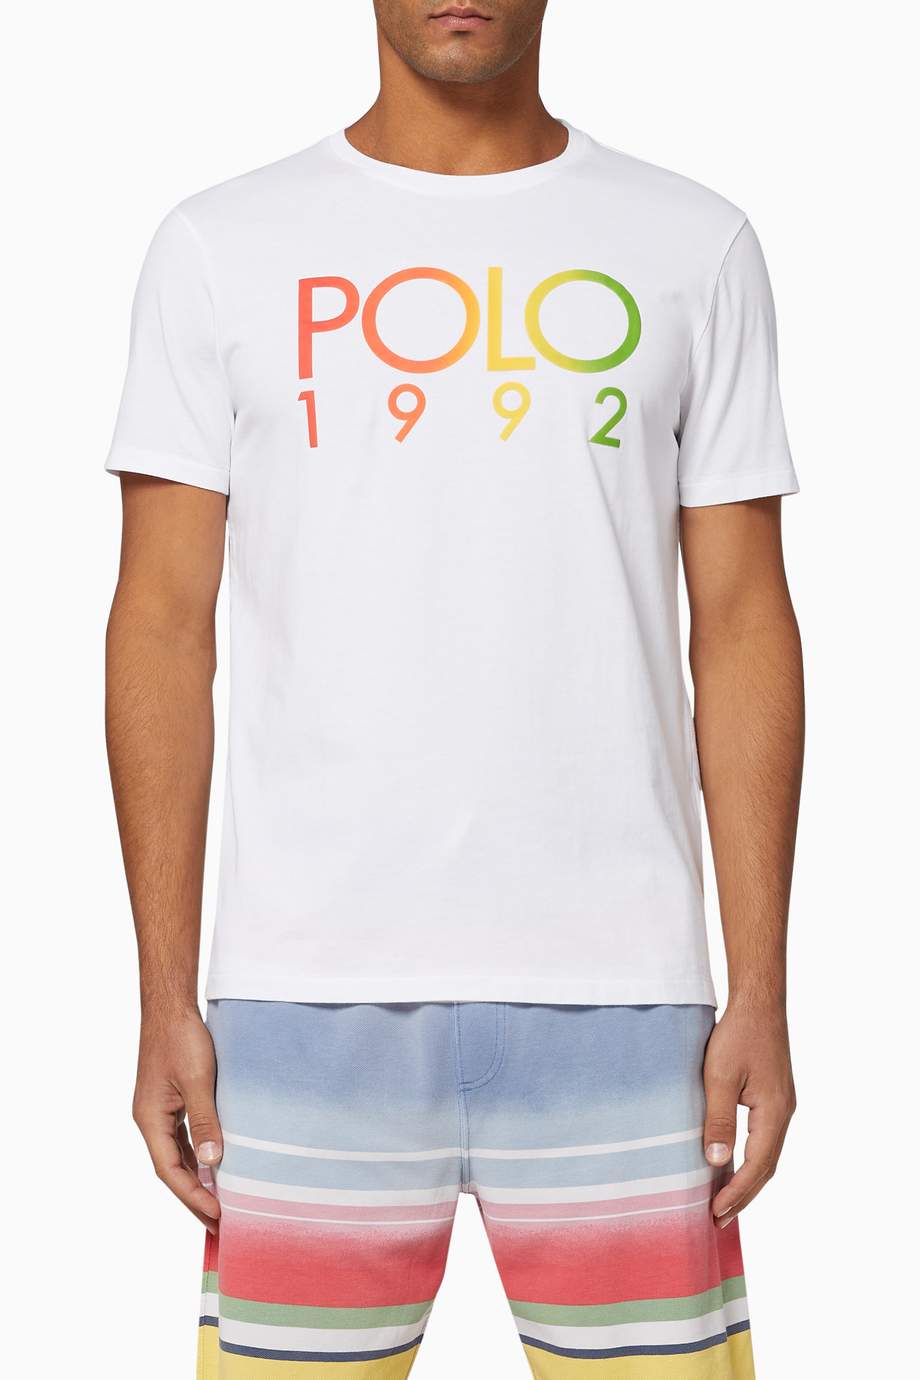 Shop Polo Ralph Lauren White Polo 1992 Custom Slim Fit T-Shirt for Men